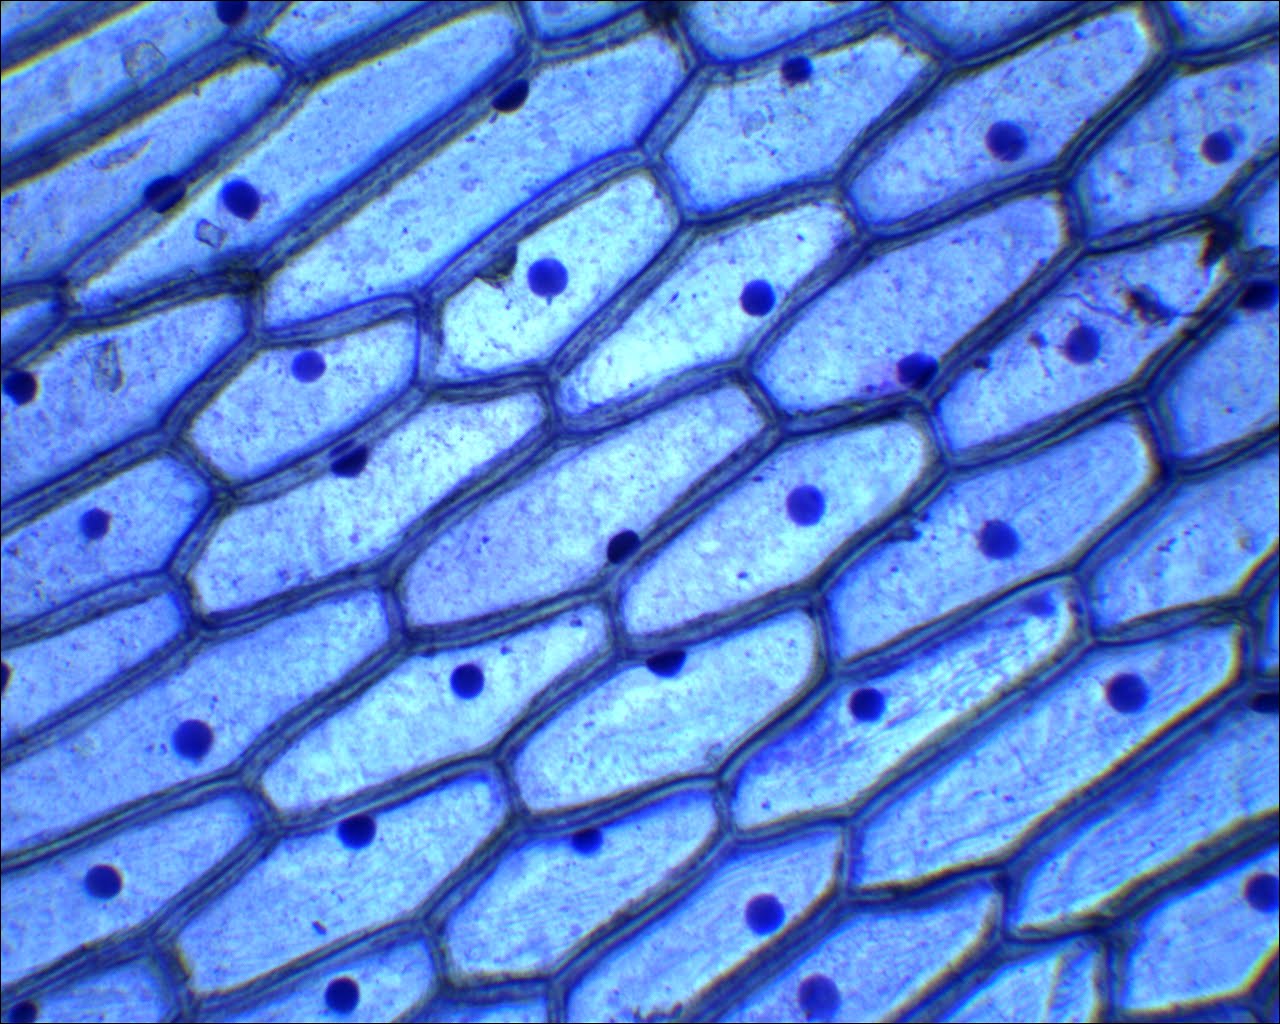 observación microscópica de las células de una cebolla